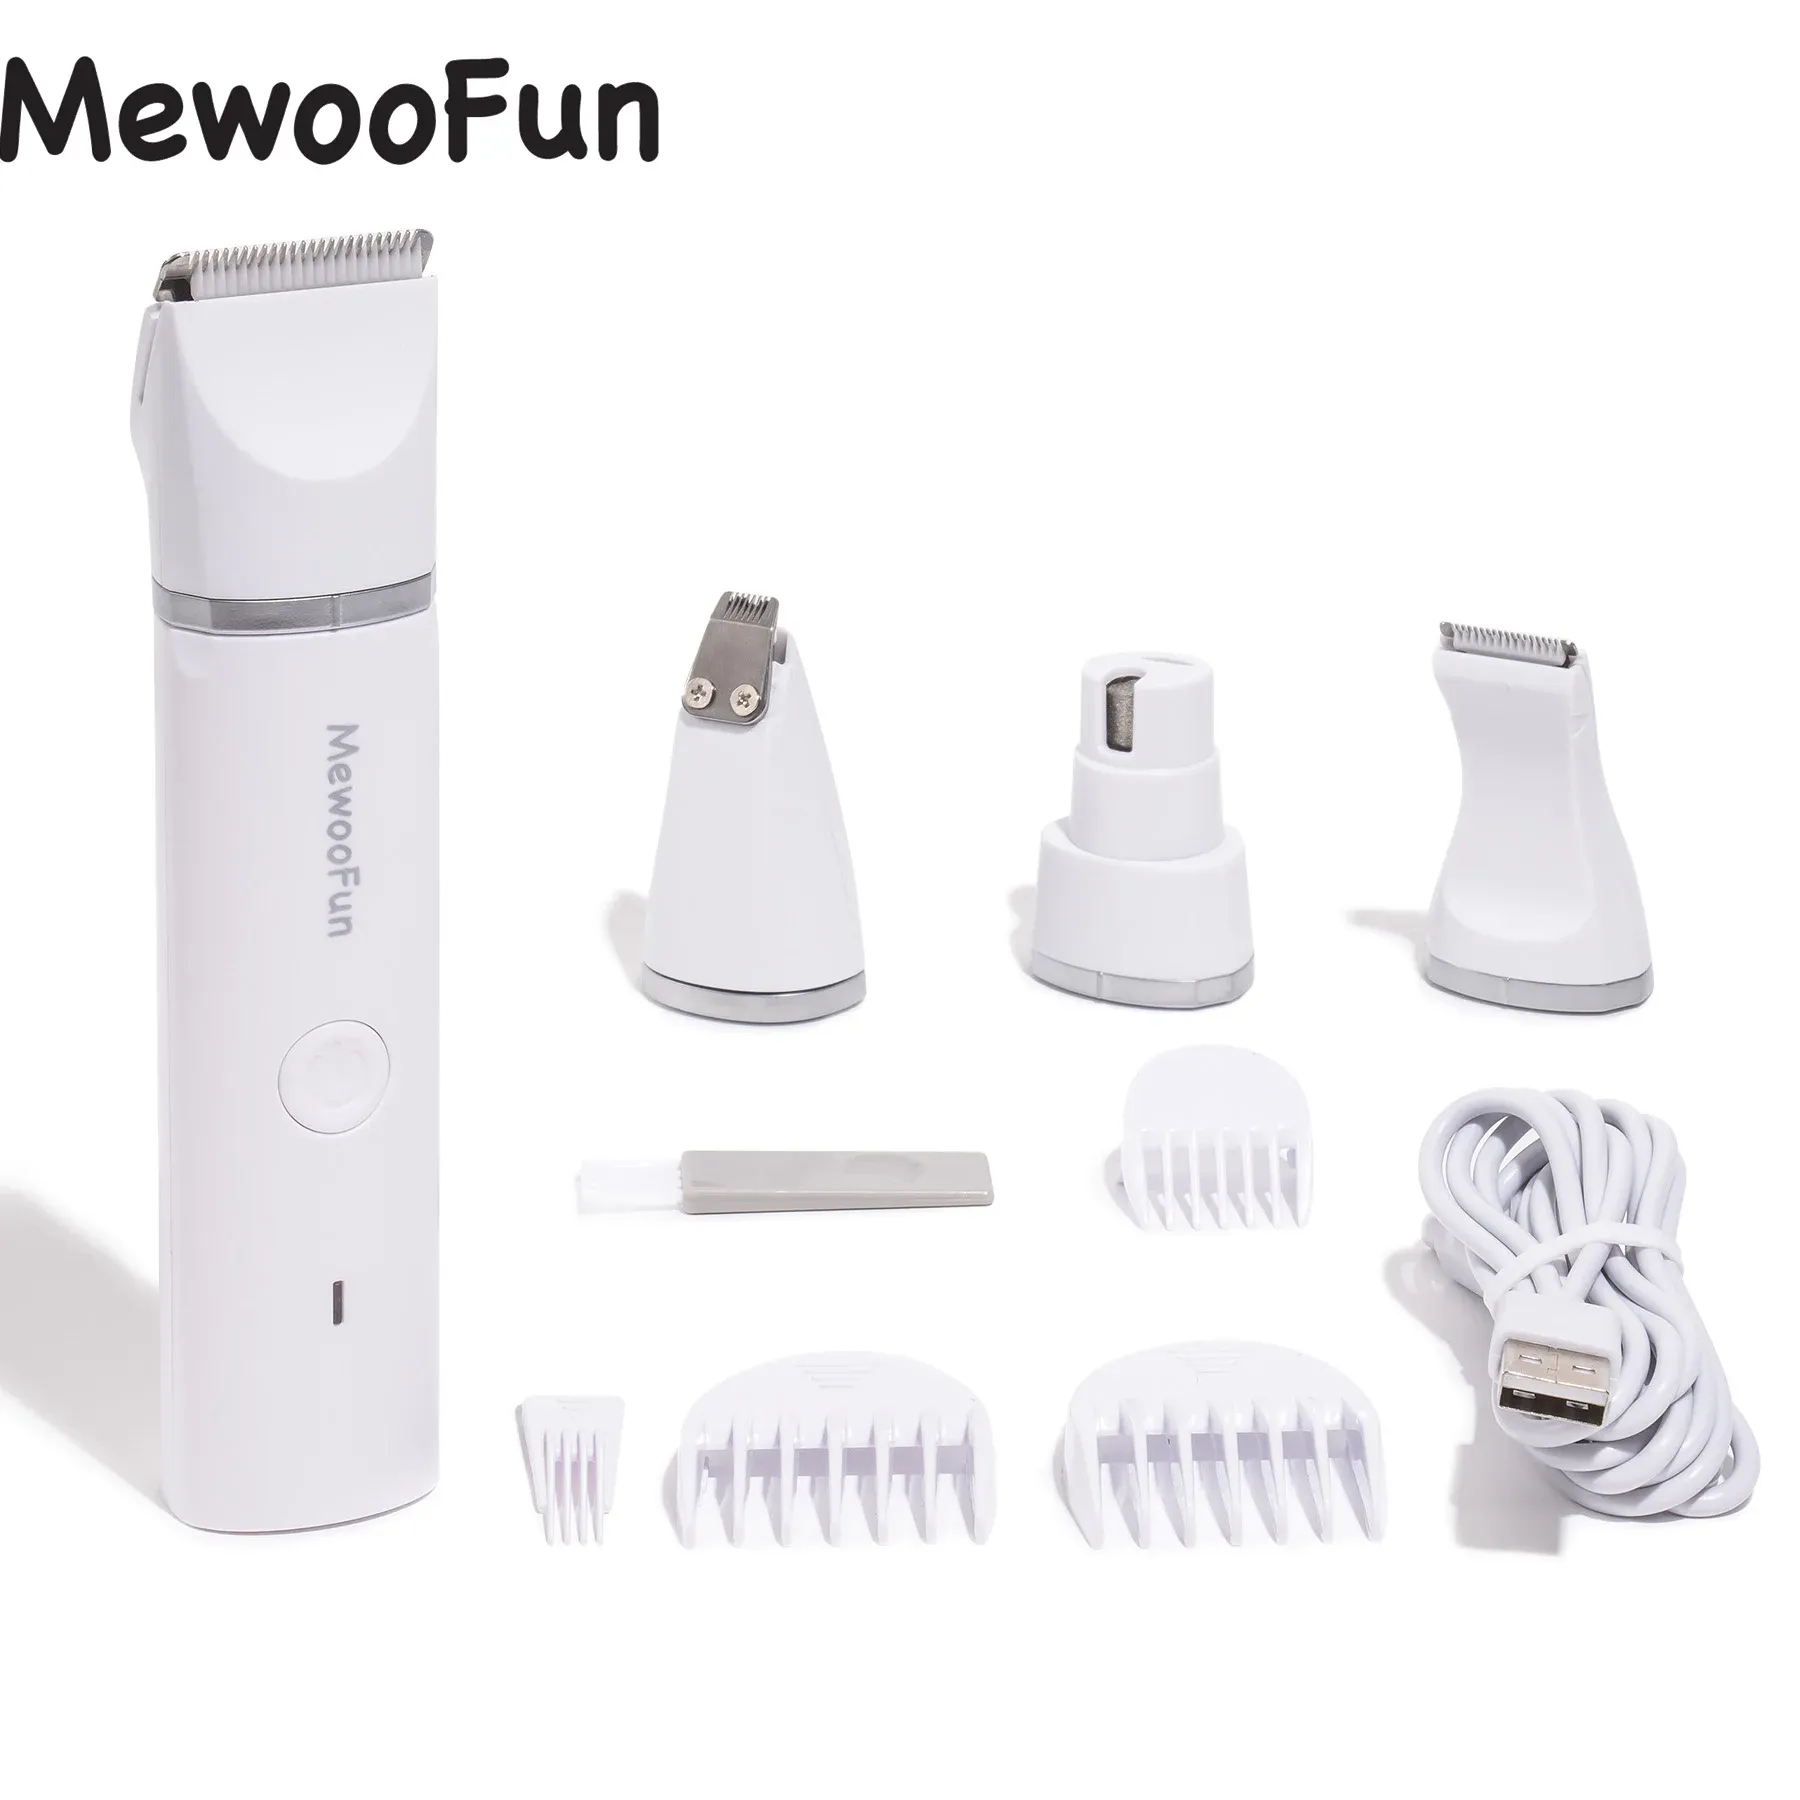 Trimmers MEWOOFUN 4 en 1 Pet Pet Electric Hair Trimmer avec 4 lames Grooming Clipper Nail Grinder Haip de recharge professionnelle pour chiens chat